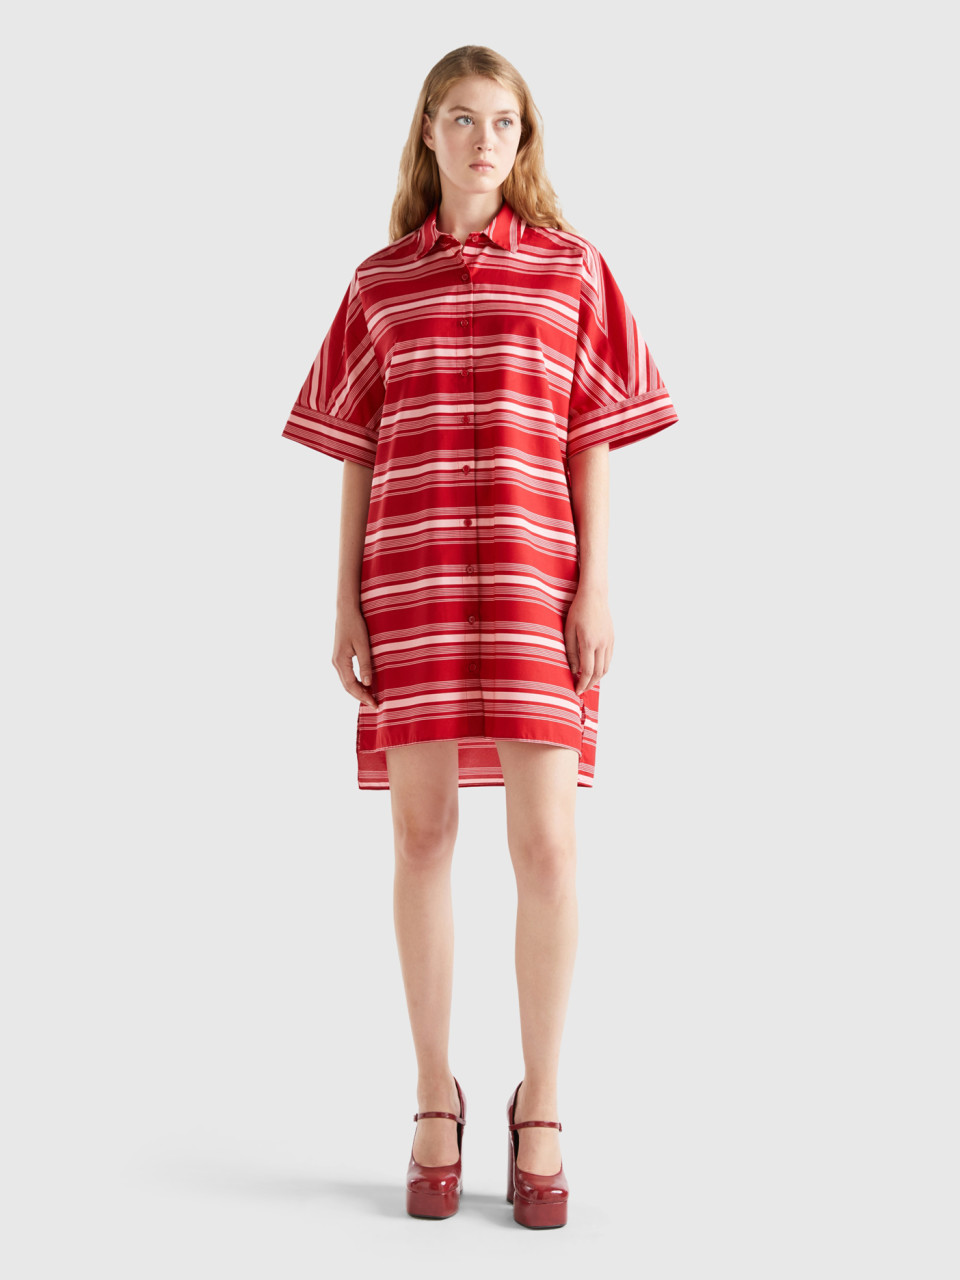 Benetton, Striped Shirt Dress, Red, Women